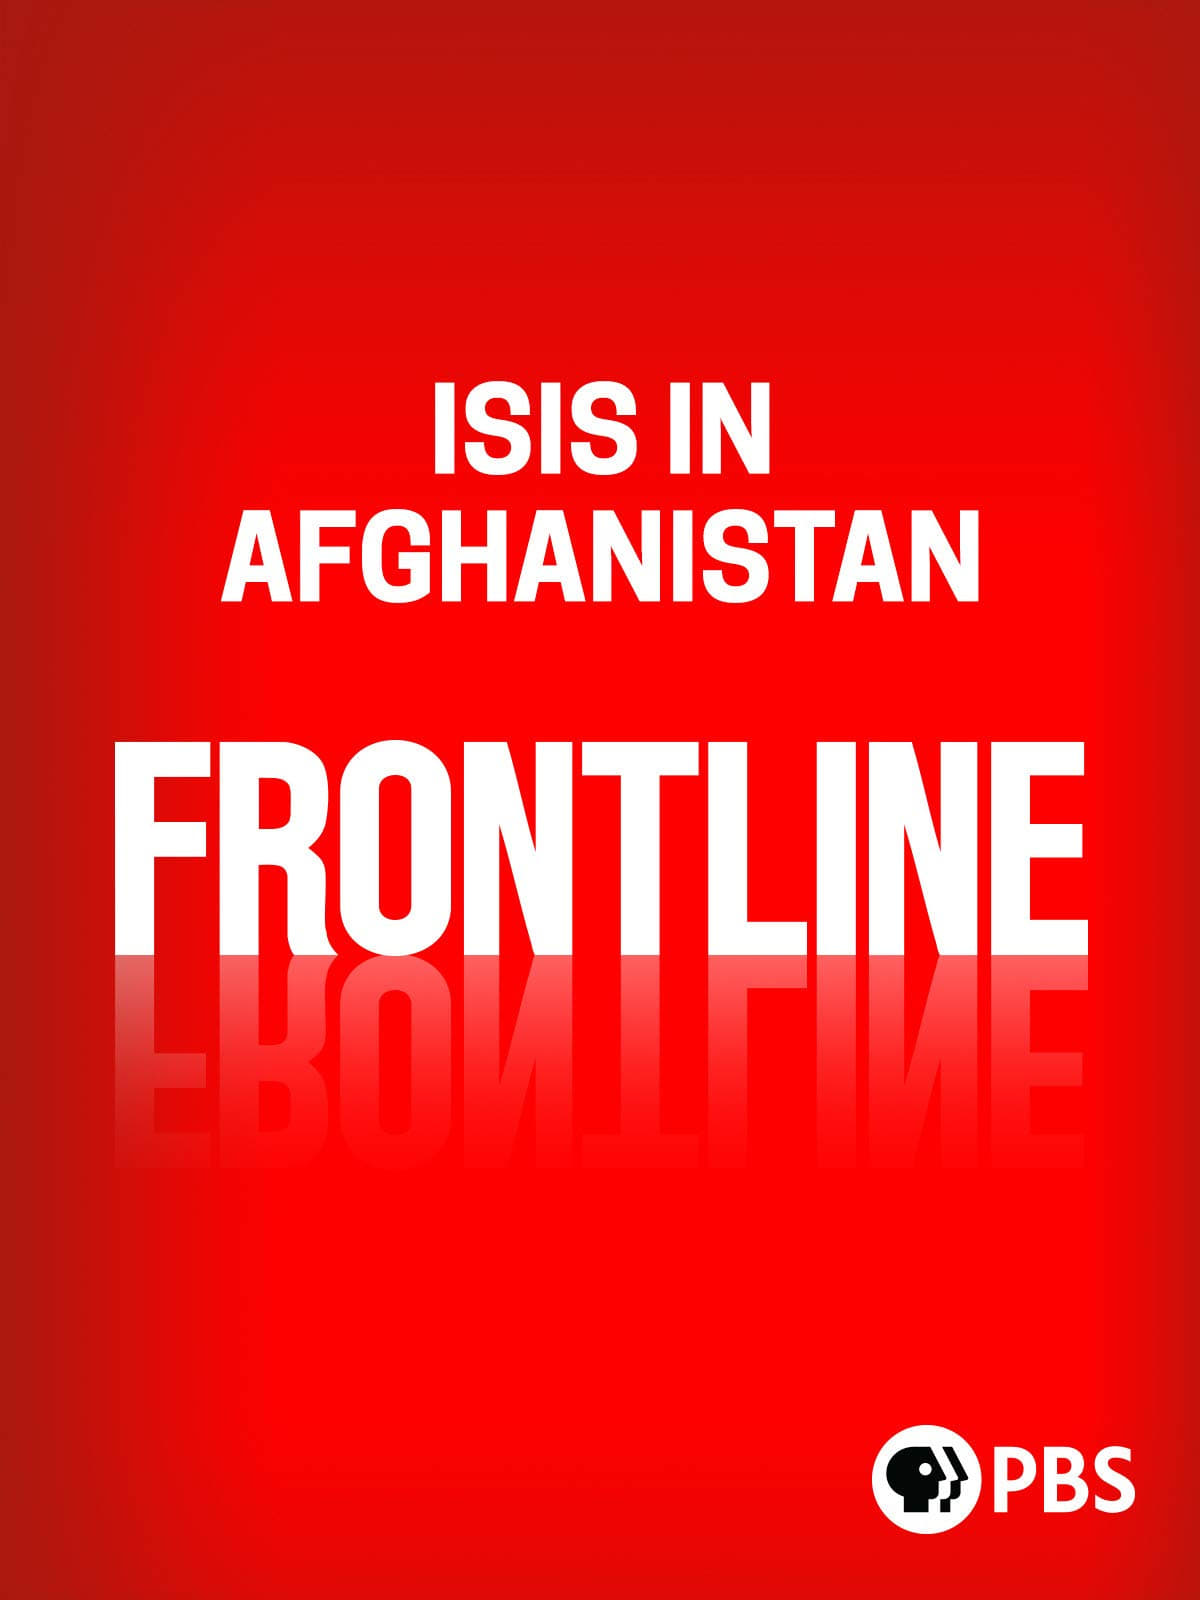 Frontline-Isis in Afghanistan